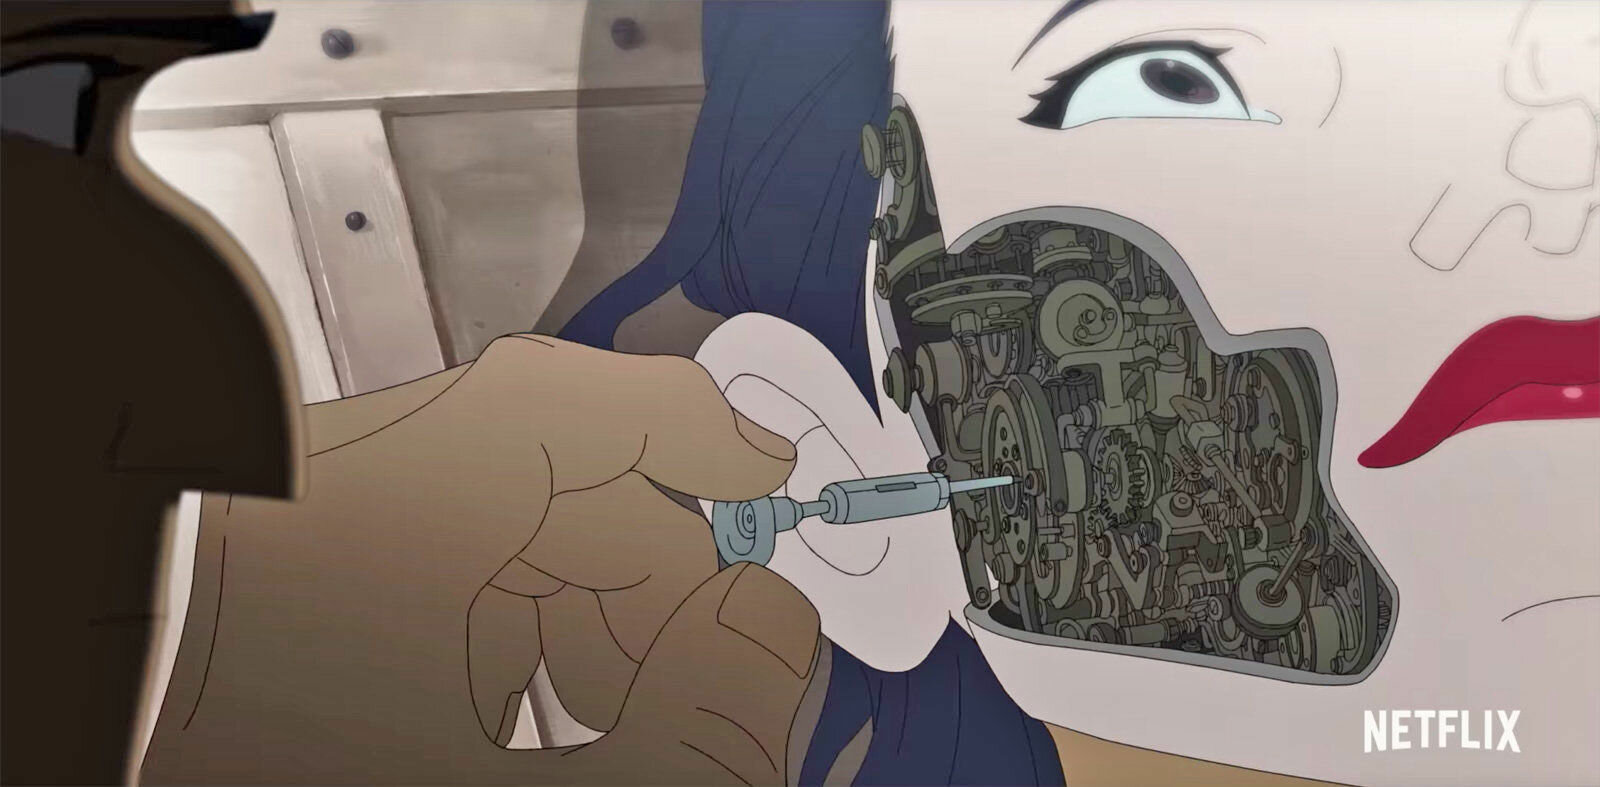 Στις 15 Μαρτίου κάνει πρεμιέρα στο Netflix η ανθολογία κινουμένων σχεδίων «Έρωτας, Θάνατος + Ρομπότ» των David Fincher και Tim Miller